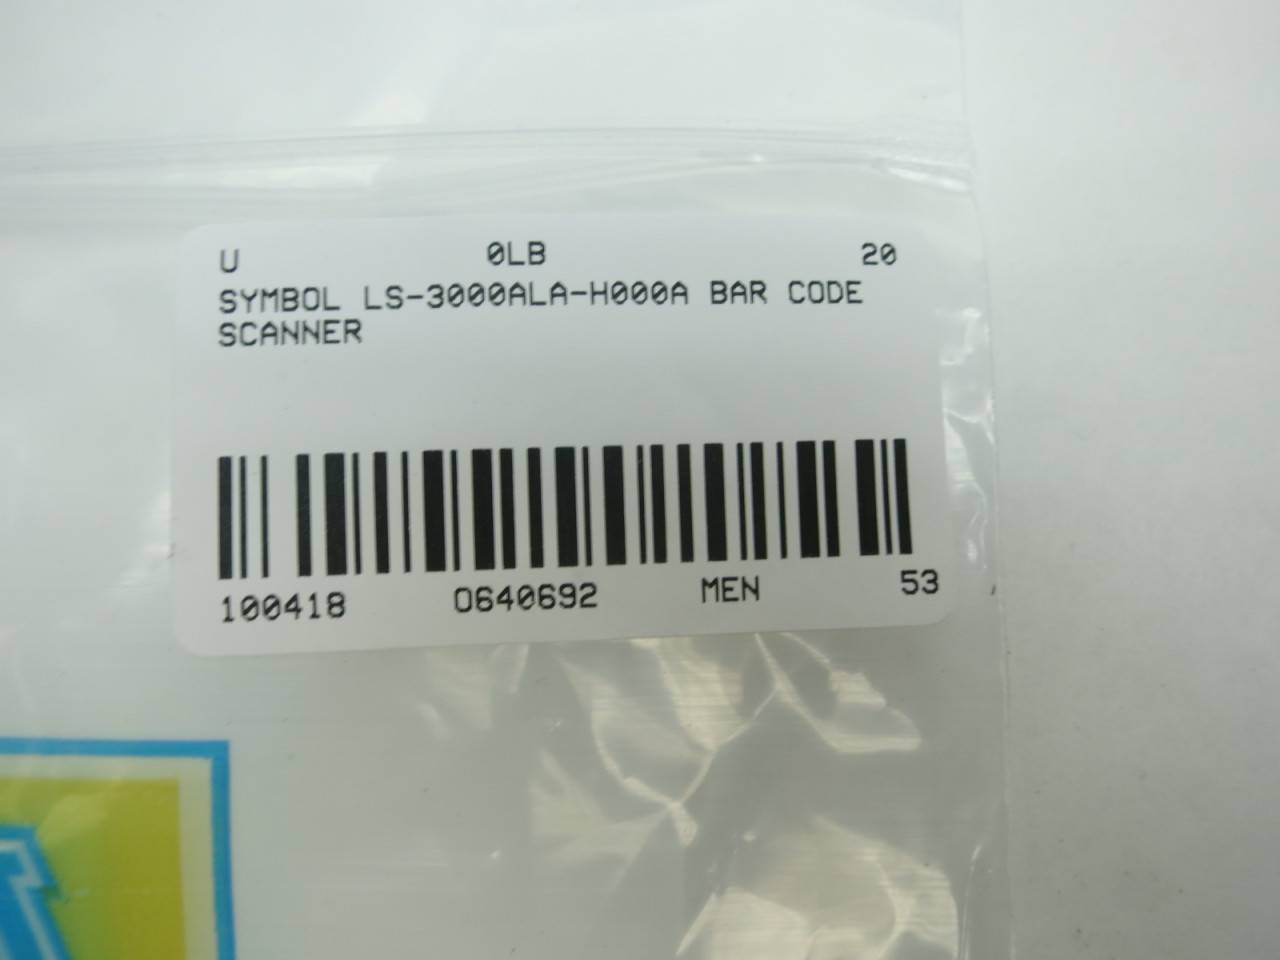 Symbol Barcode Scanner Ls-3000alr-h000a for sale online